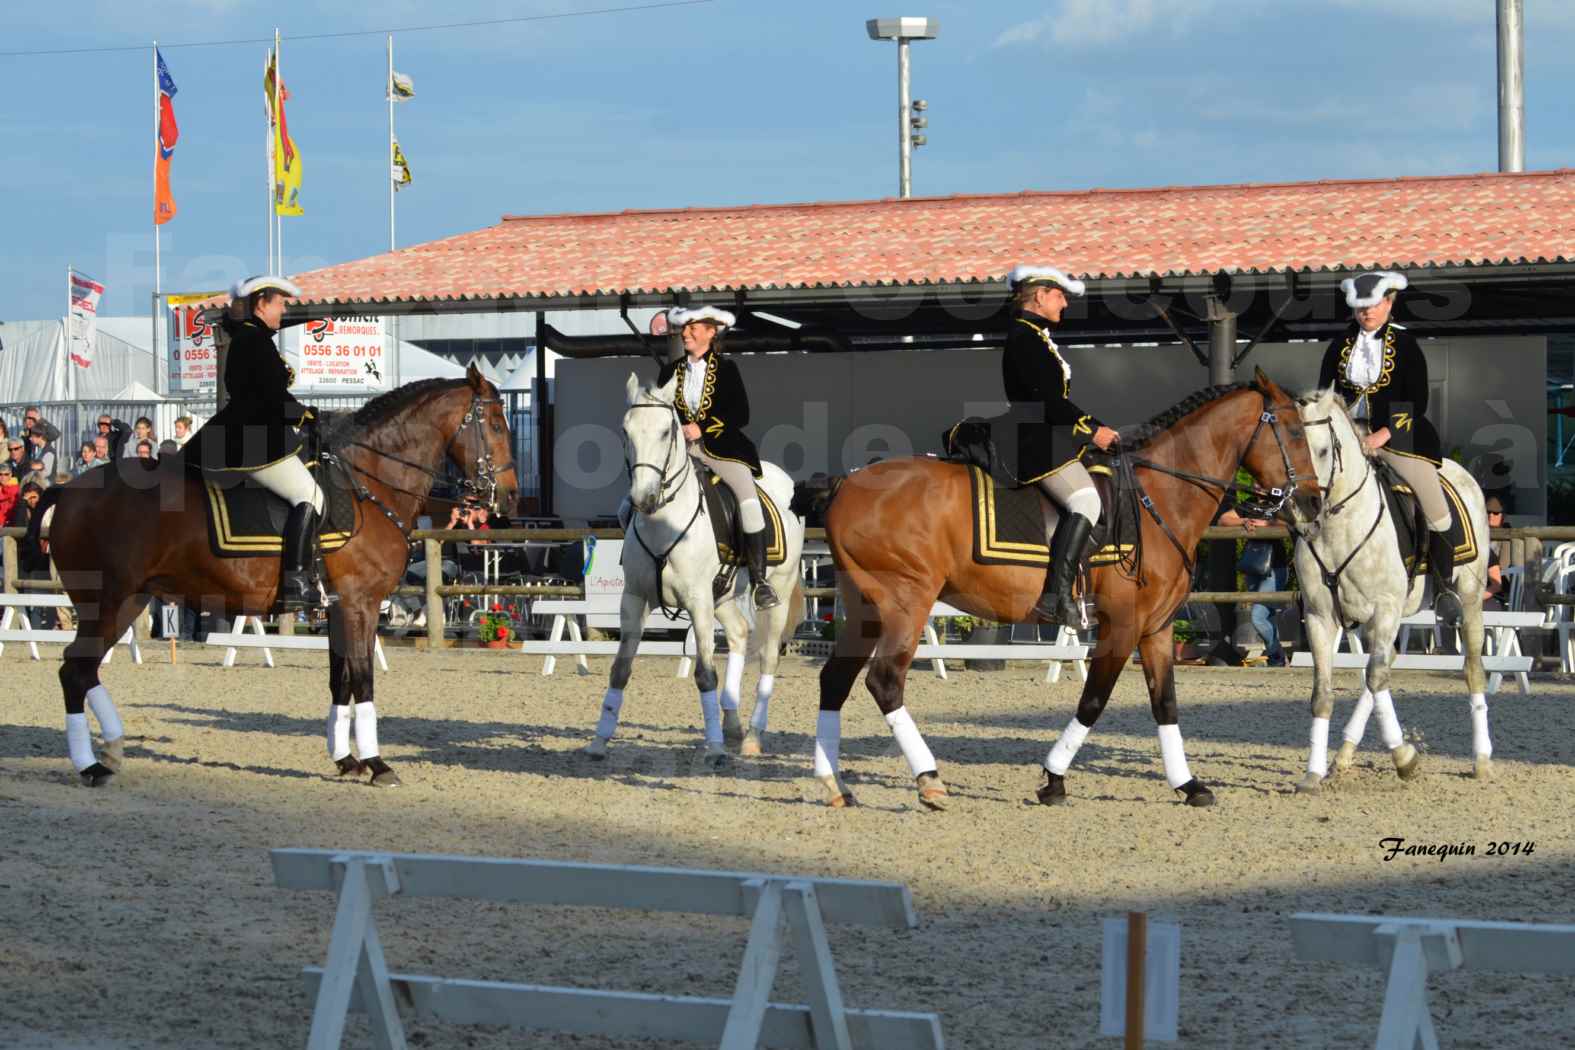 Carrousel de cavalières Equitation de travail lors du salon "Equitaine" à Bordeaux en 2014 - 08